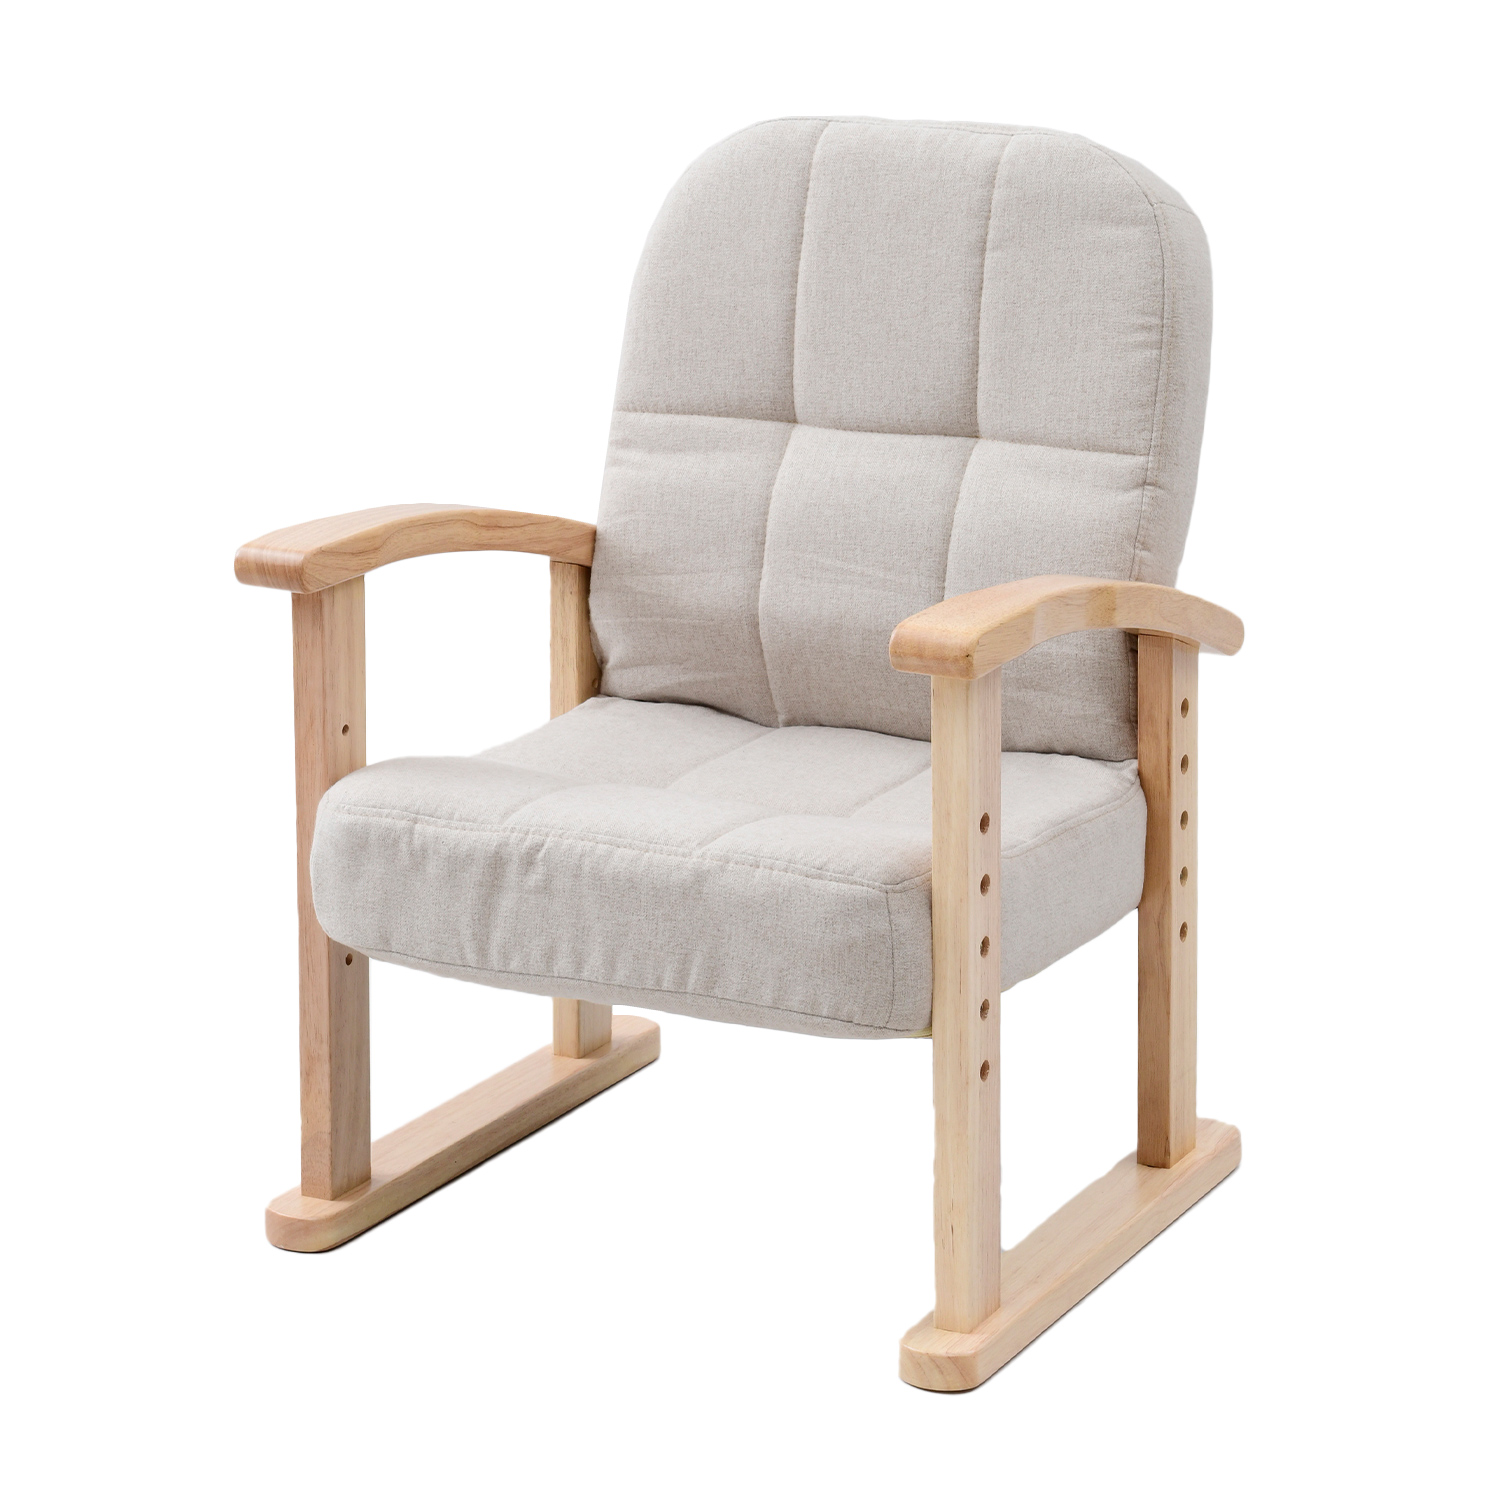 リクライニングチェア 座椅子 一人掛け 組立不要 高さ調節可 幅53.5 奥行54-71 高さ66.5-84.5cm KMZC-55 リビングチェア  リラックスチェア チェア 椅子 イス